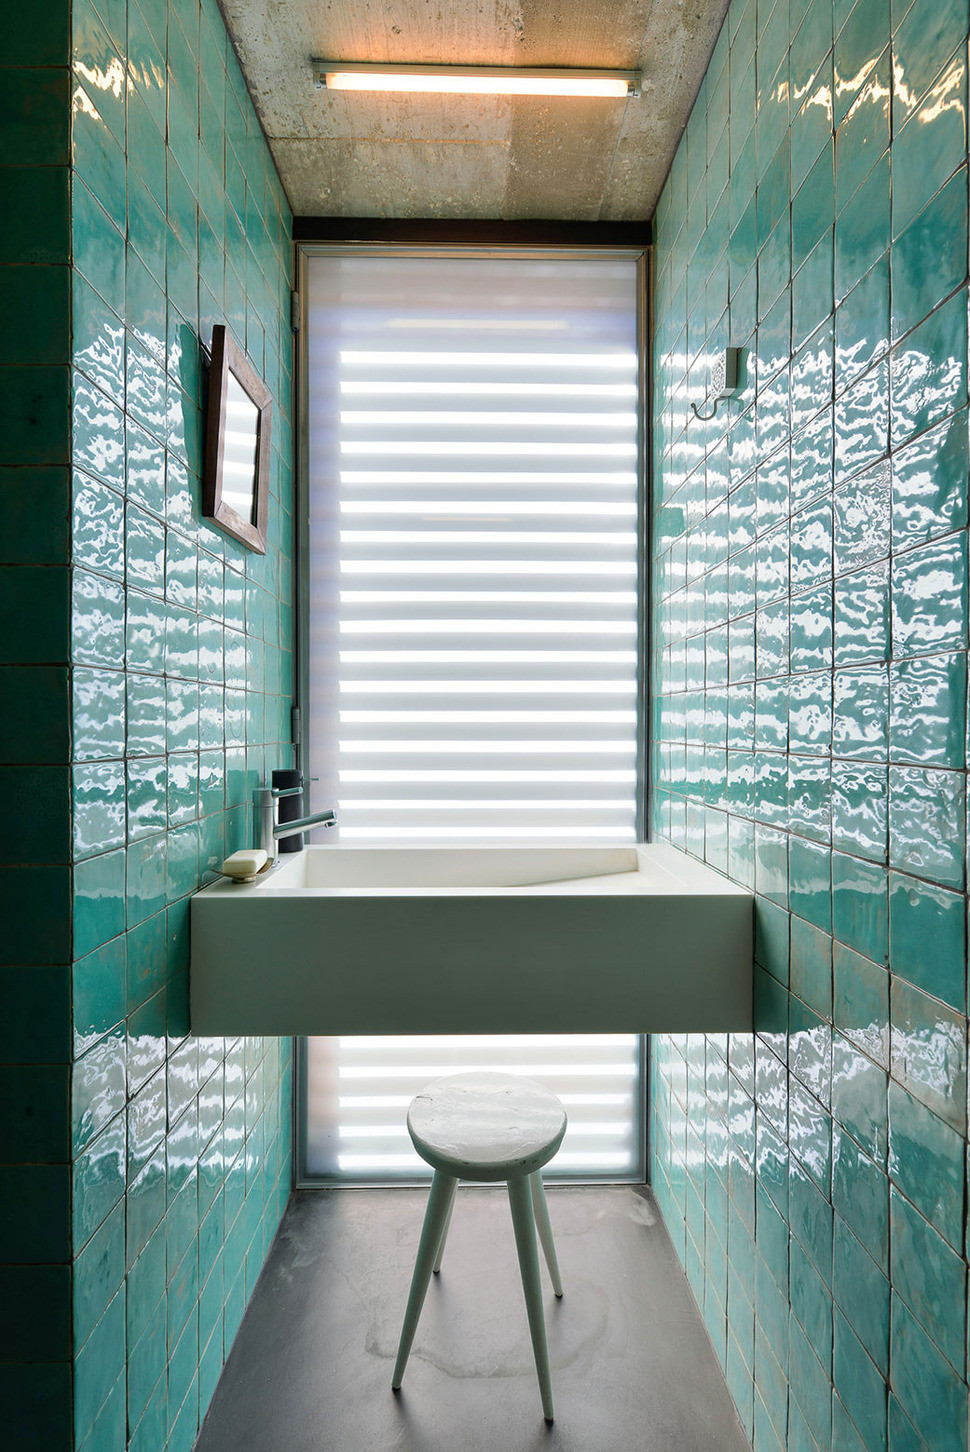 Modern Bathroom Tile Ideas
 Top 10 Tile Design Ideas for a Modern Bathroom for 2015